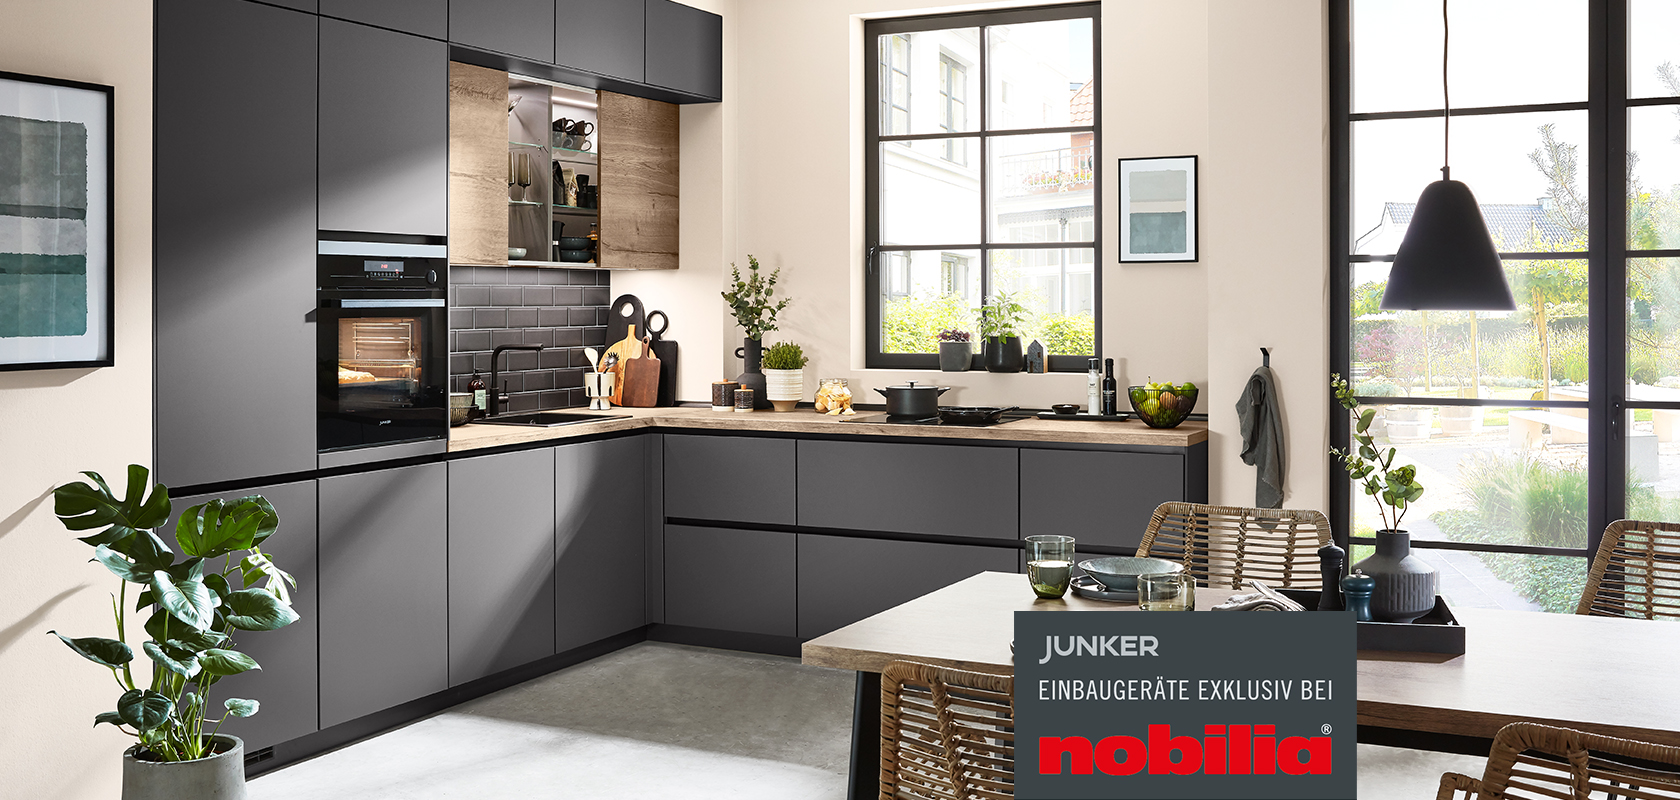 Moderne Küchengestaltung mit eleganten dunklen Schränken, Edelstahlgeräten und einer eleganten Frühstücksbar, die Funktionalität mit zeitgemäßer Ästhetik verbindet.